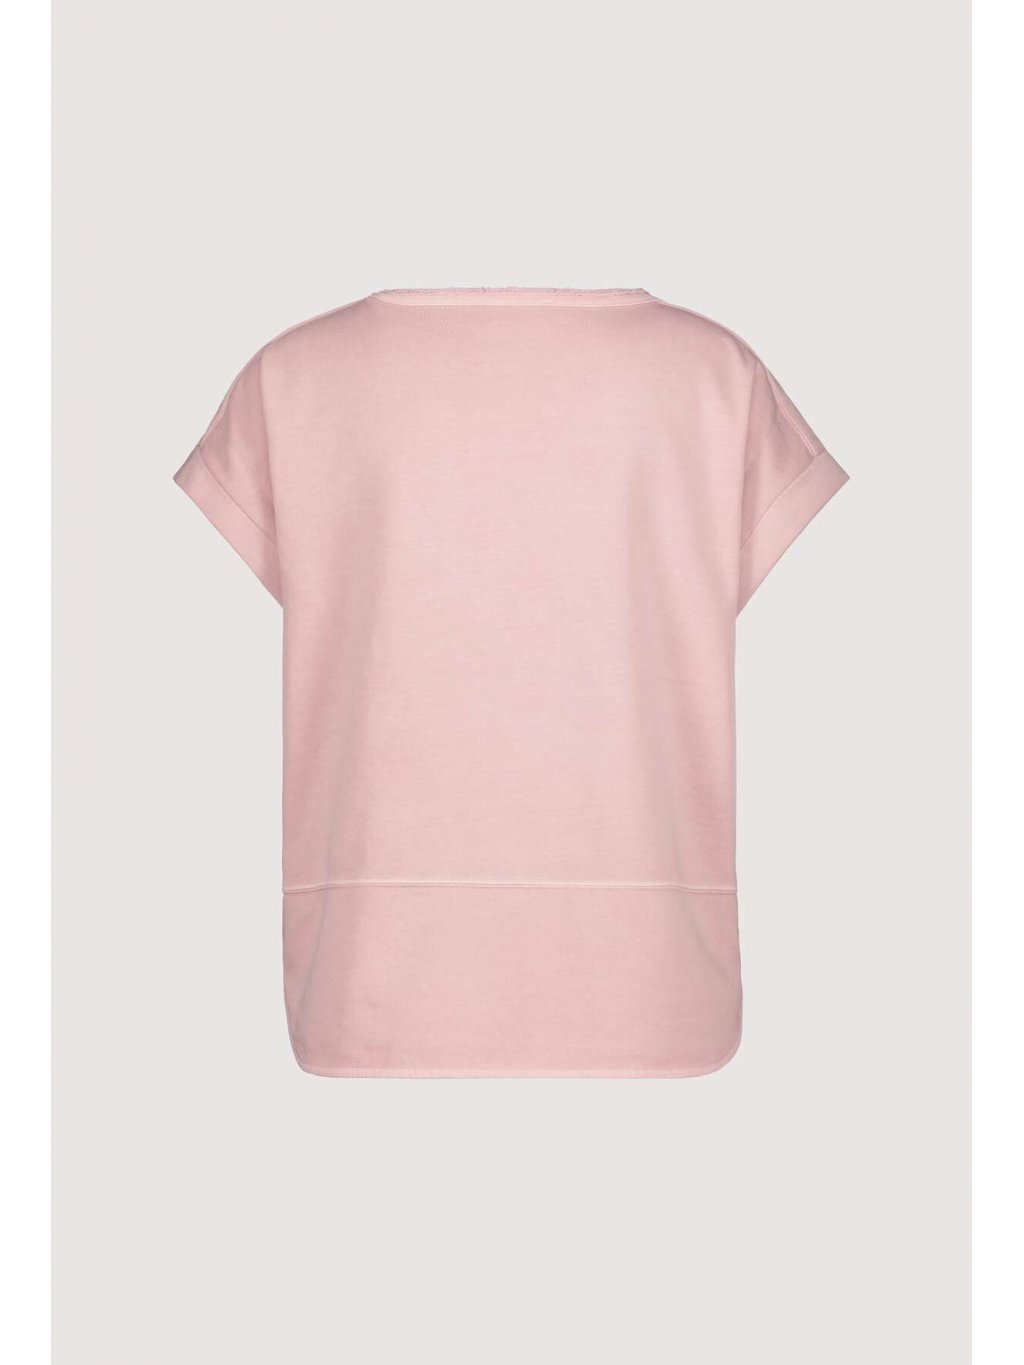 Tričko Monari 7119 růžové s třepením